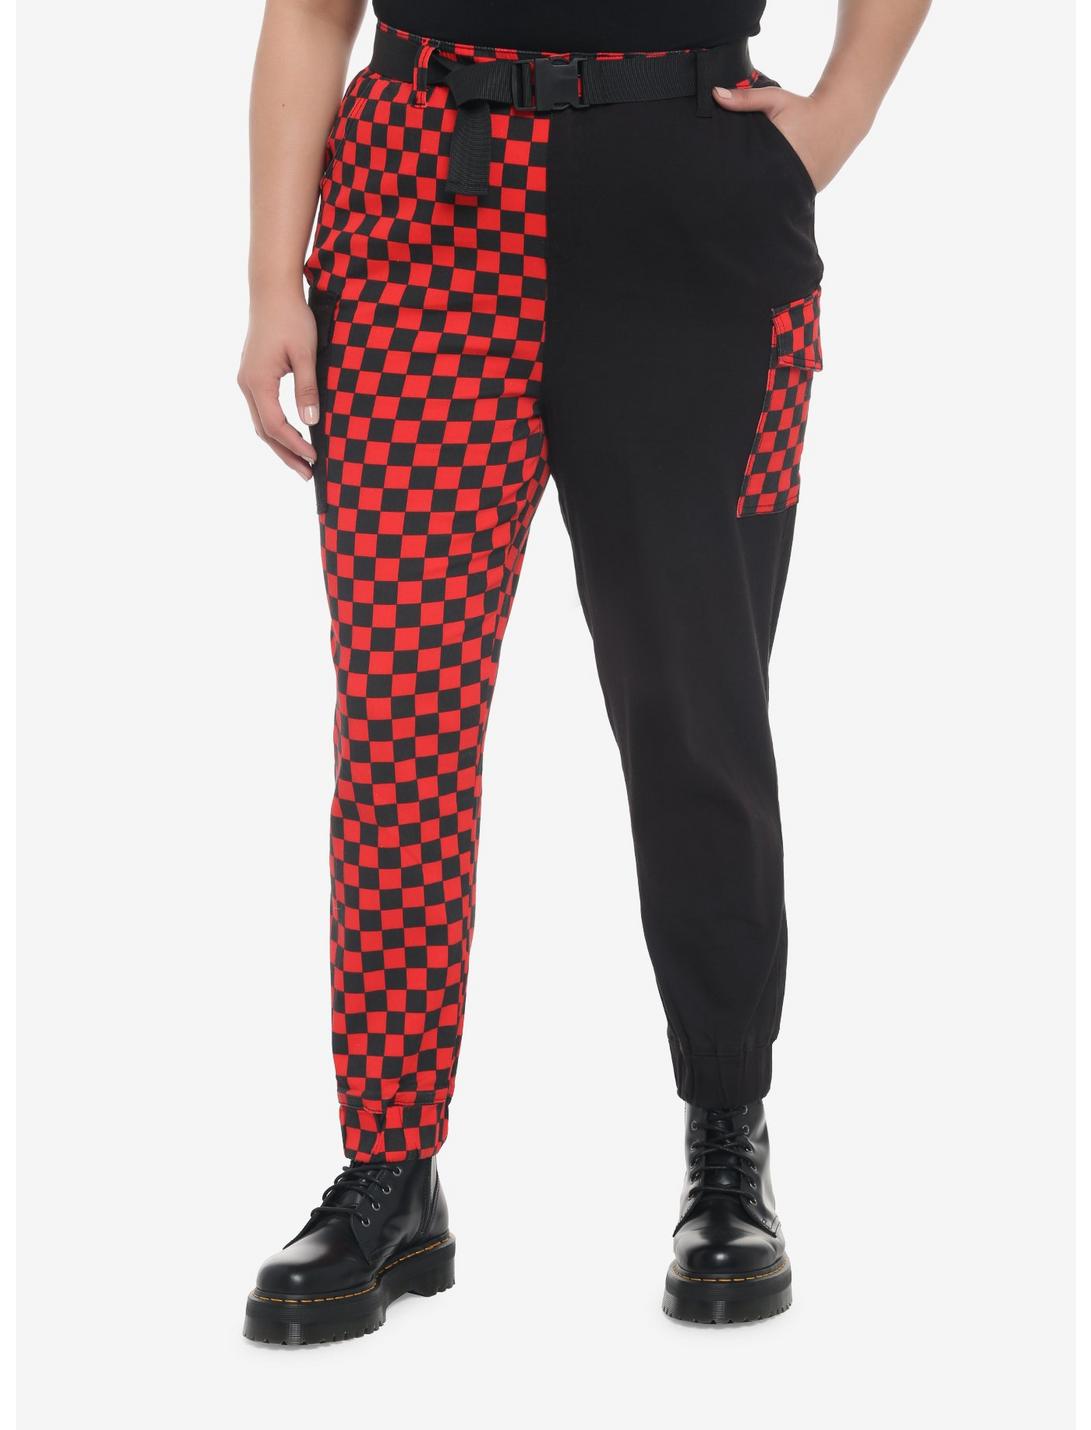 Black & Red Checkered Split Jogger Pants Plus Size, BLACK, hi-res